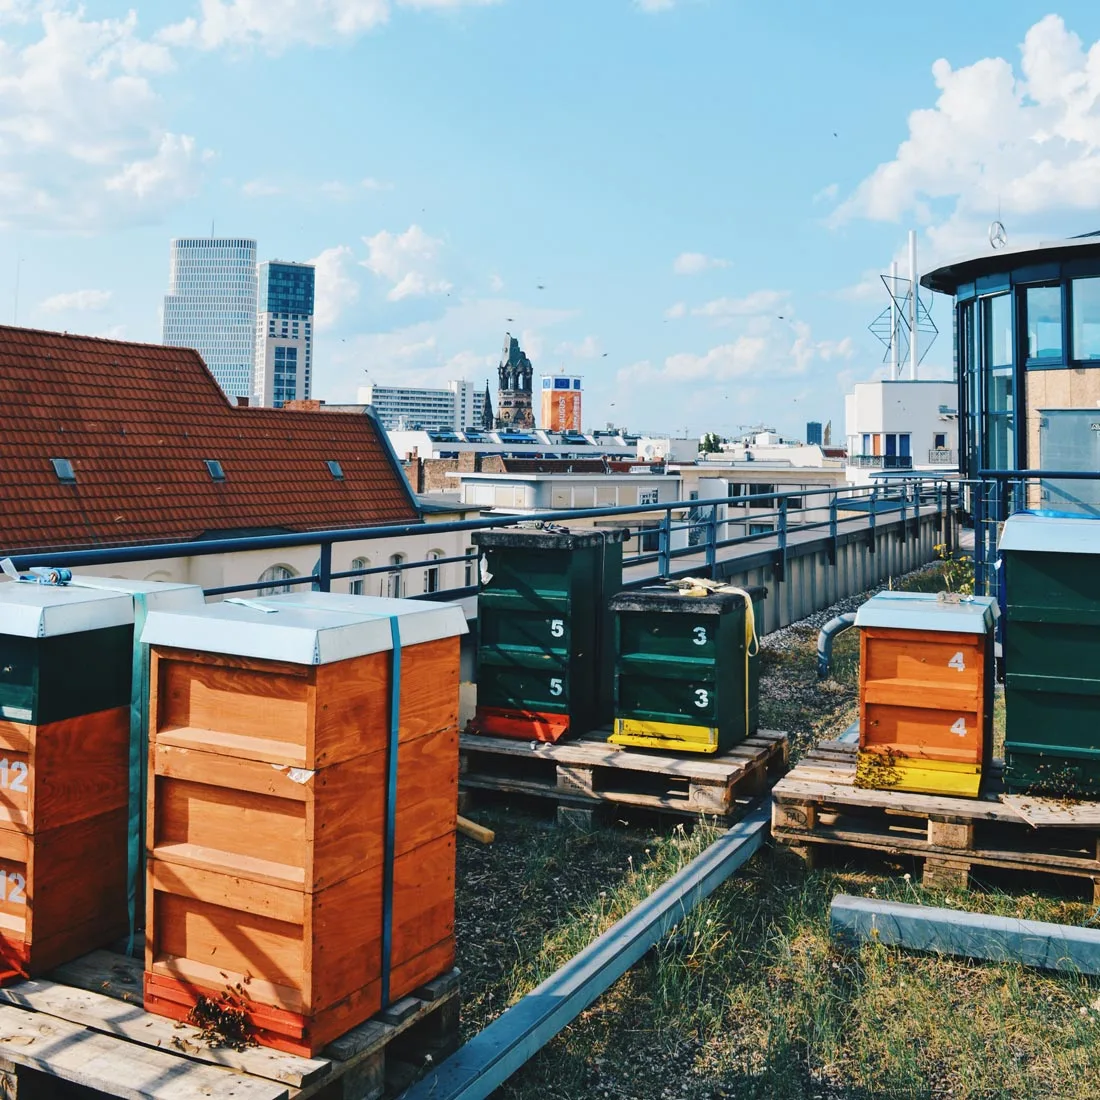 Rooftop is home for thousands of Honey Bees | Scandic Berlin Kurfürstendamm gay-friendly Hotel © Coupleofmen.com